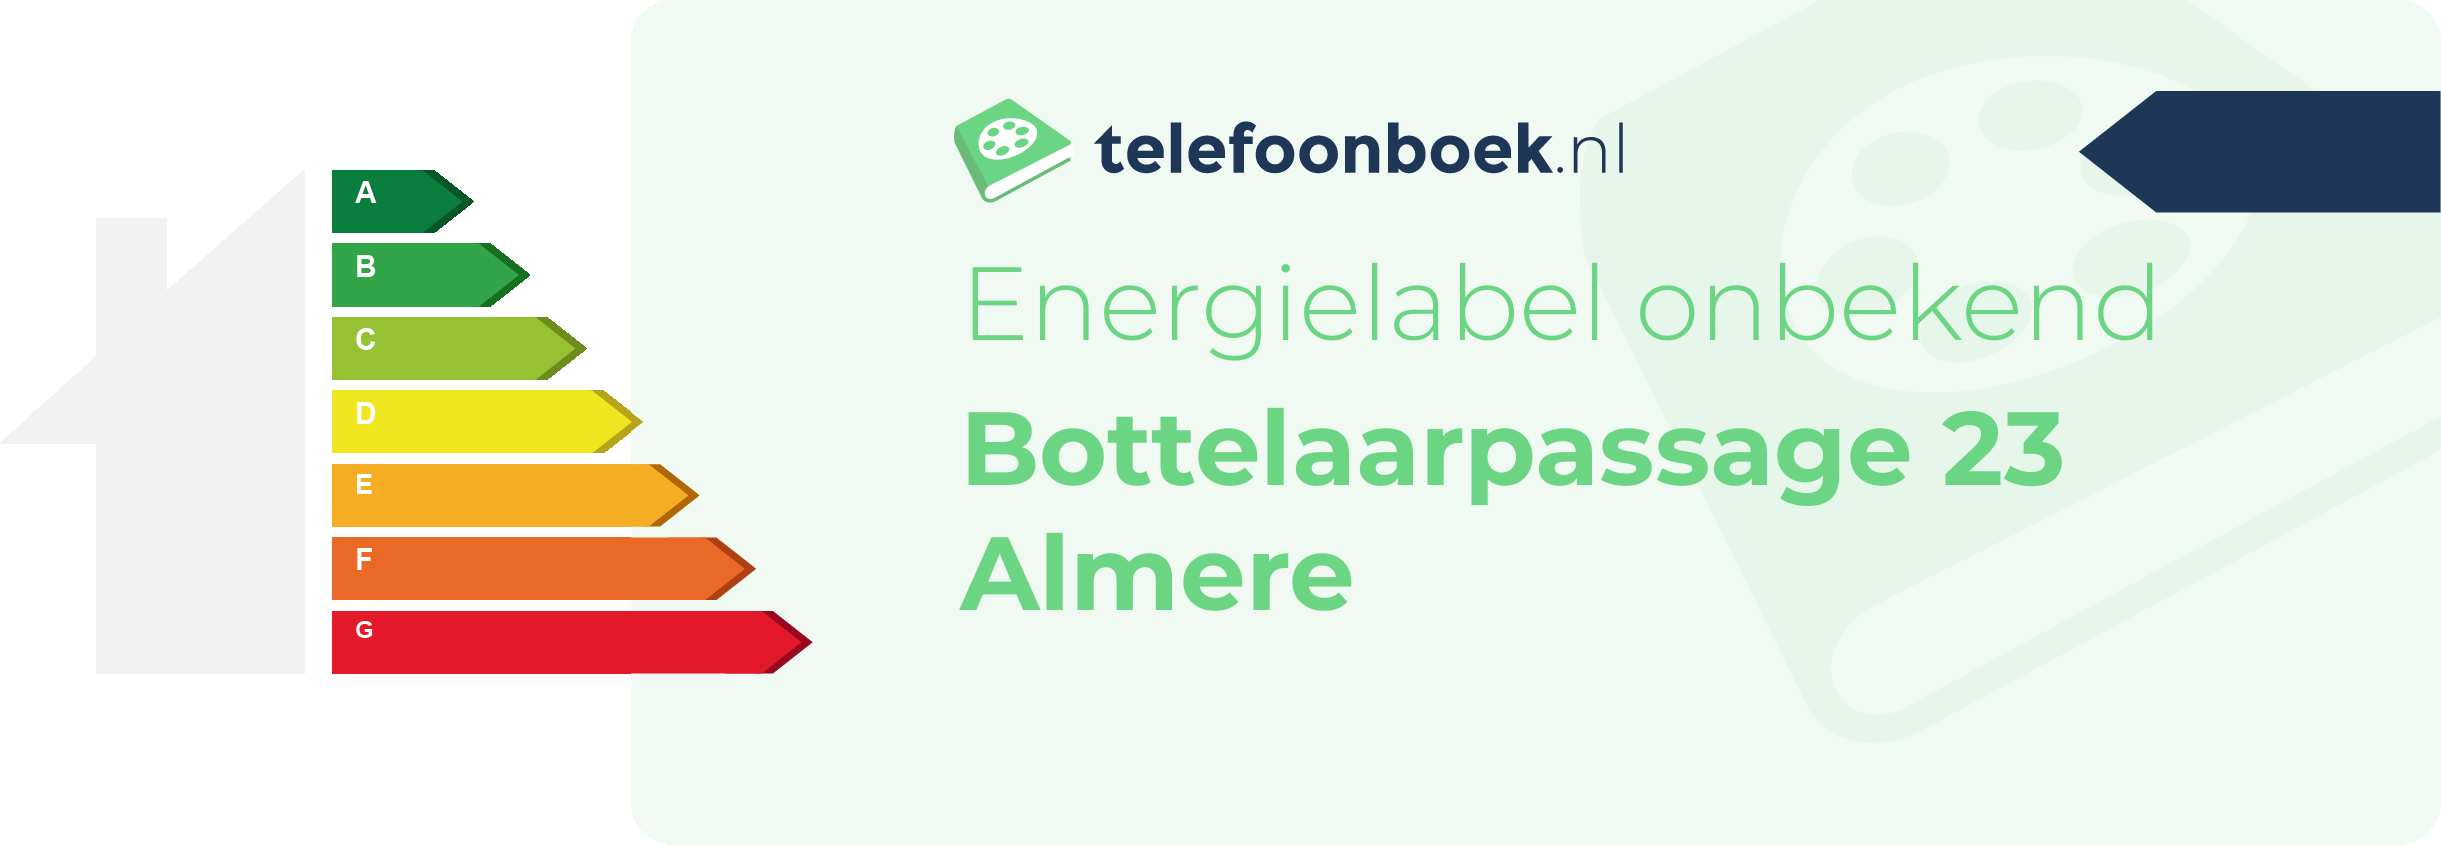 Energielabel Bottelaarpassage 23 Almere